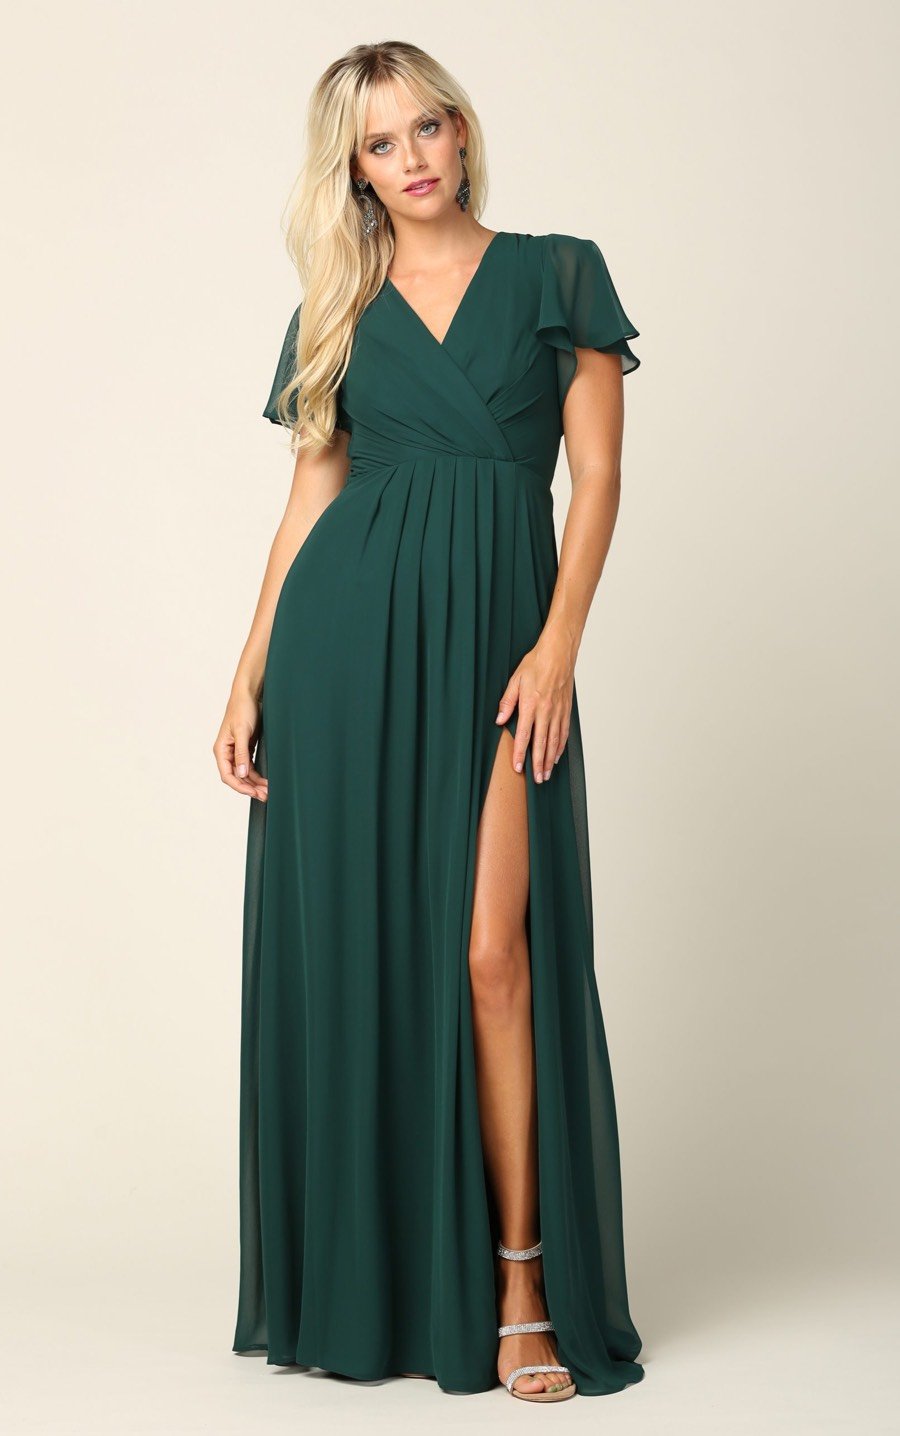 grøn festkjole med korte ærmer og slids - Eva Collection - tp kjoler